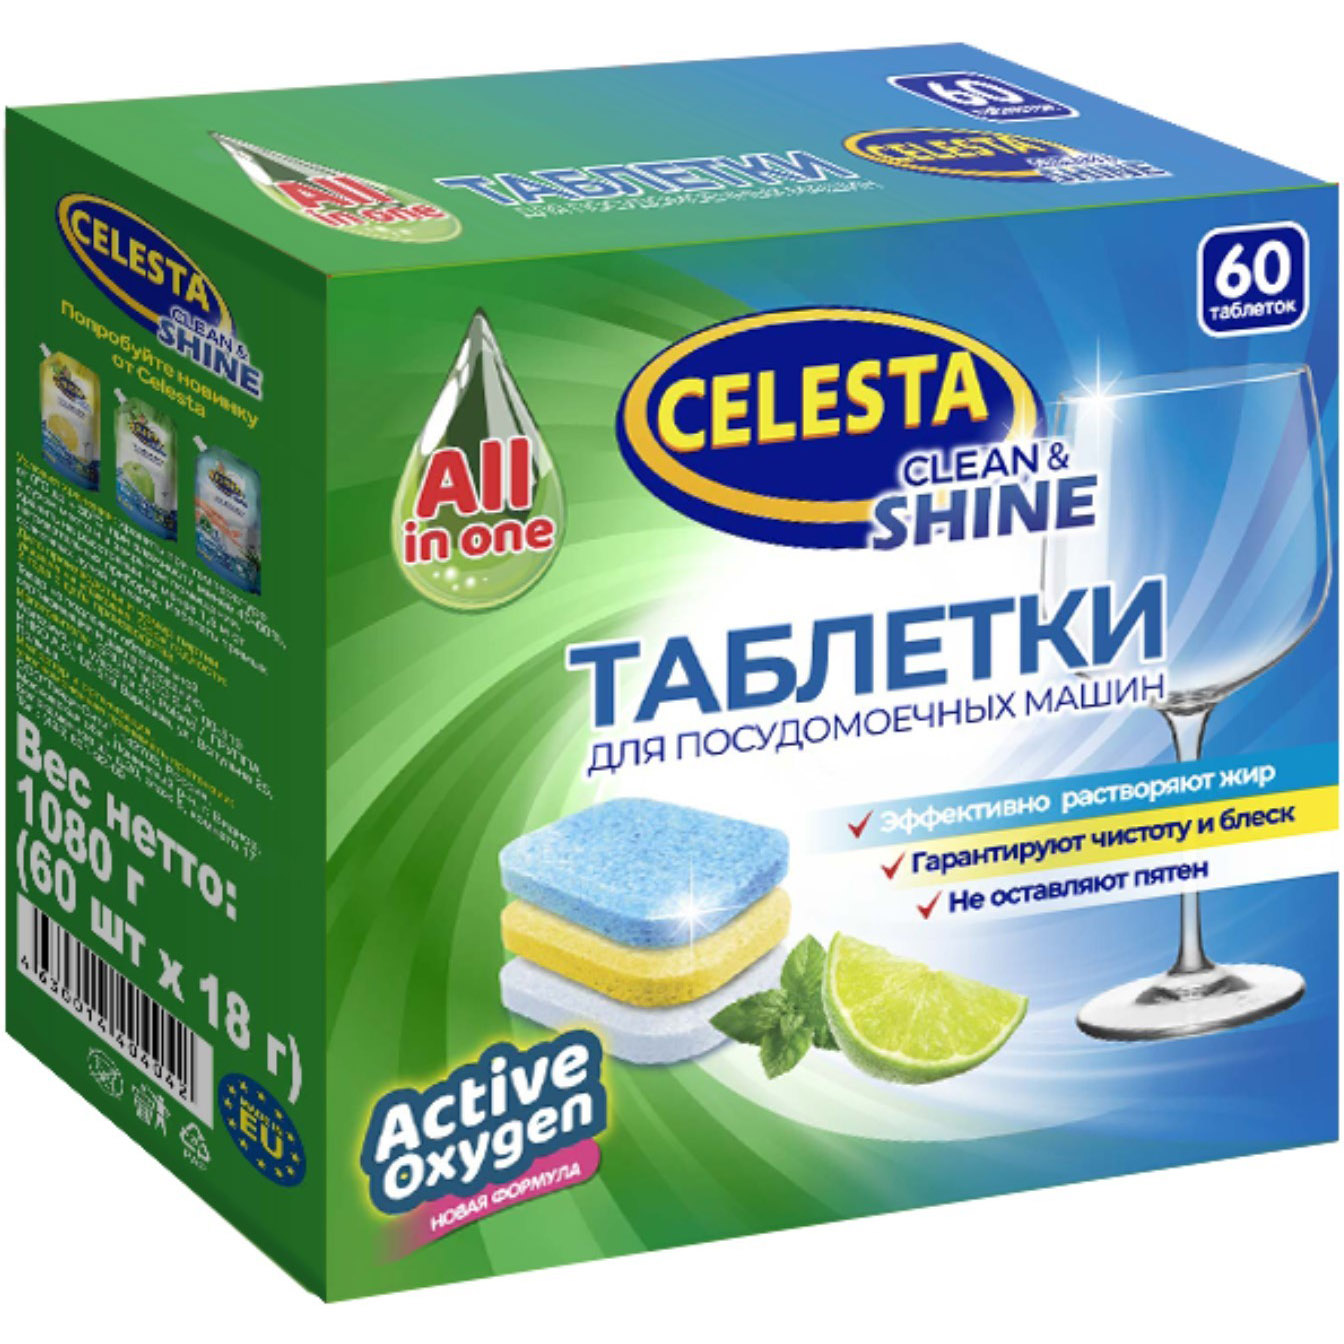 Таблетки для посудомоечных машин Celesta Clean & shine Трехслойные 60 шт laboratory katrin экологичные таблетки для посудомоечных машин clean ocean 55